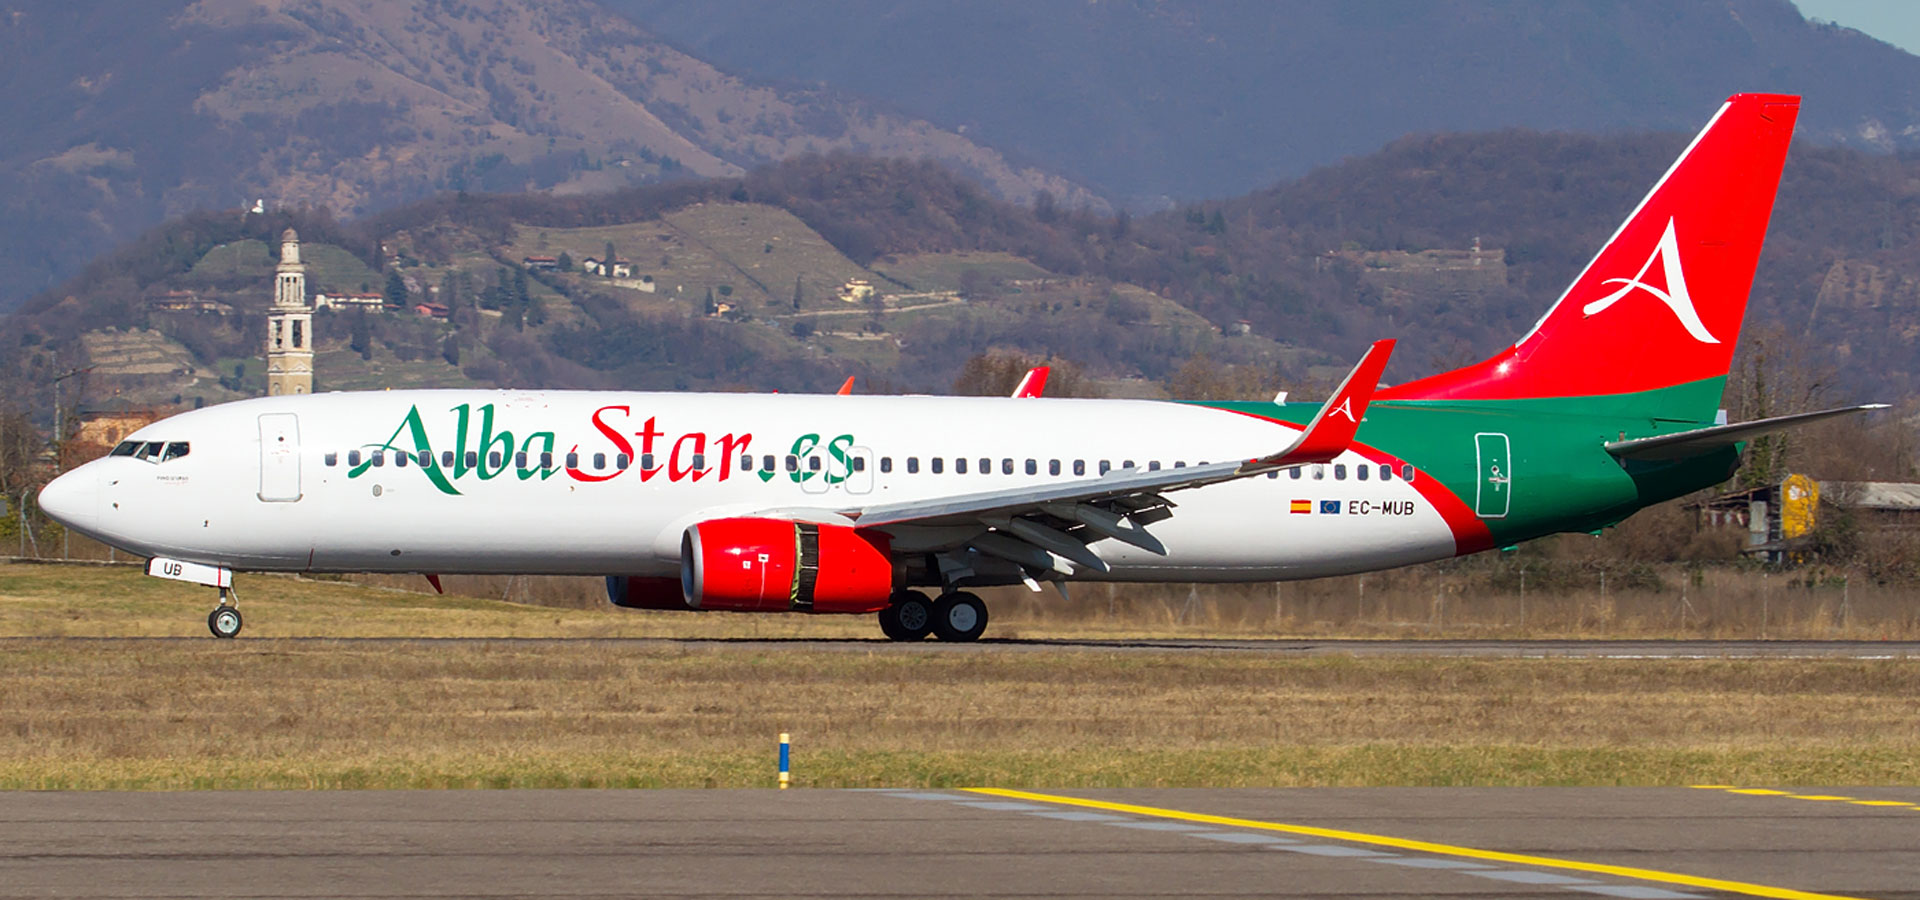 Albastar annuncia la programmazione estiva in partenza dall’Aeroporto di Milano Bergamo